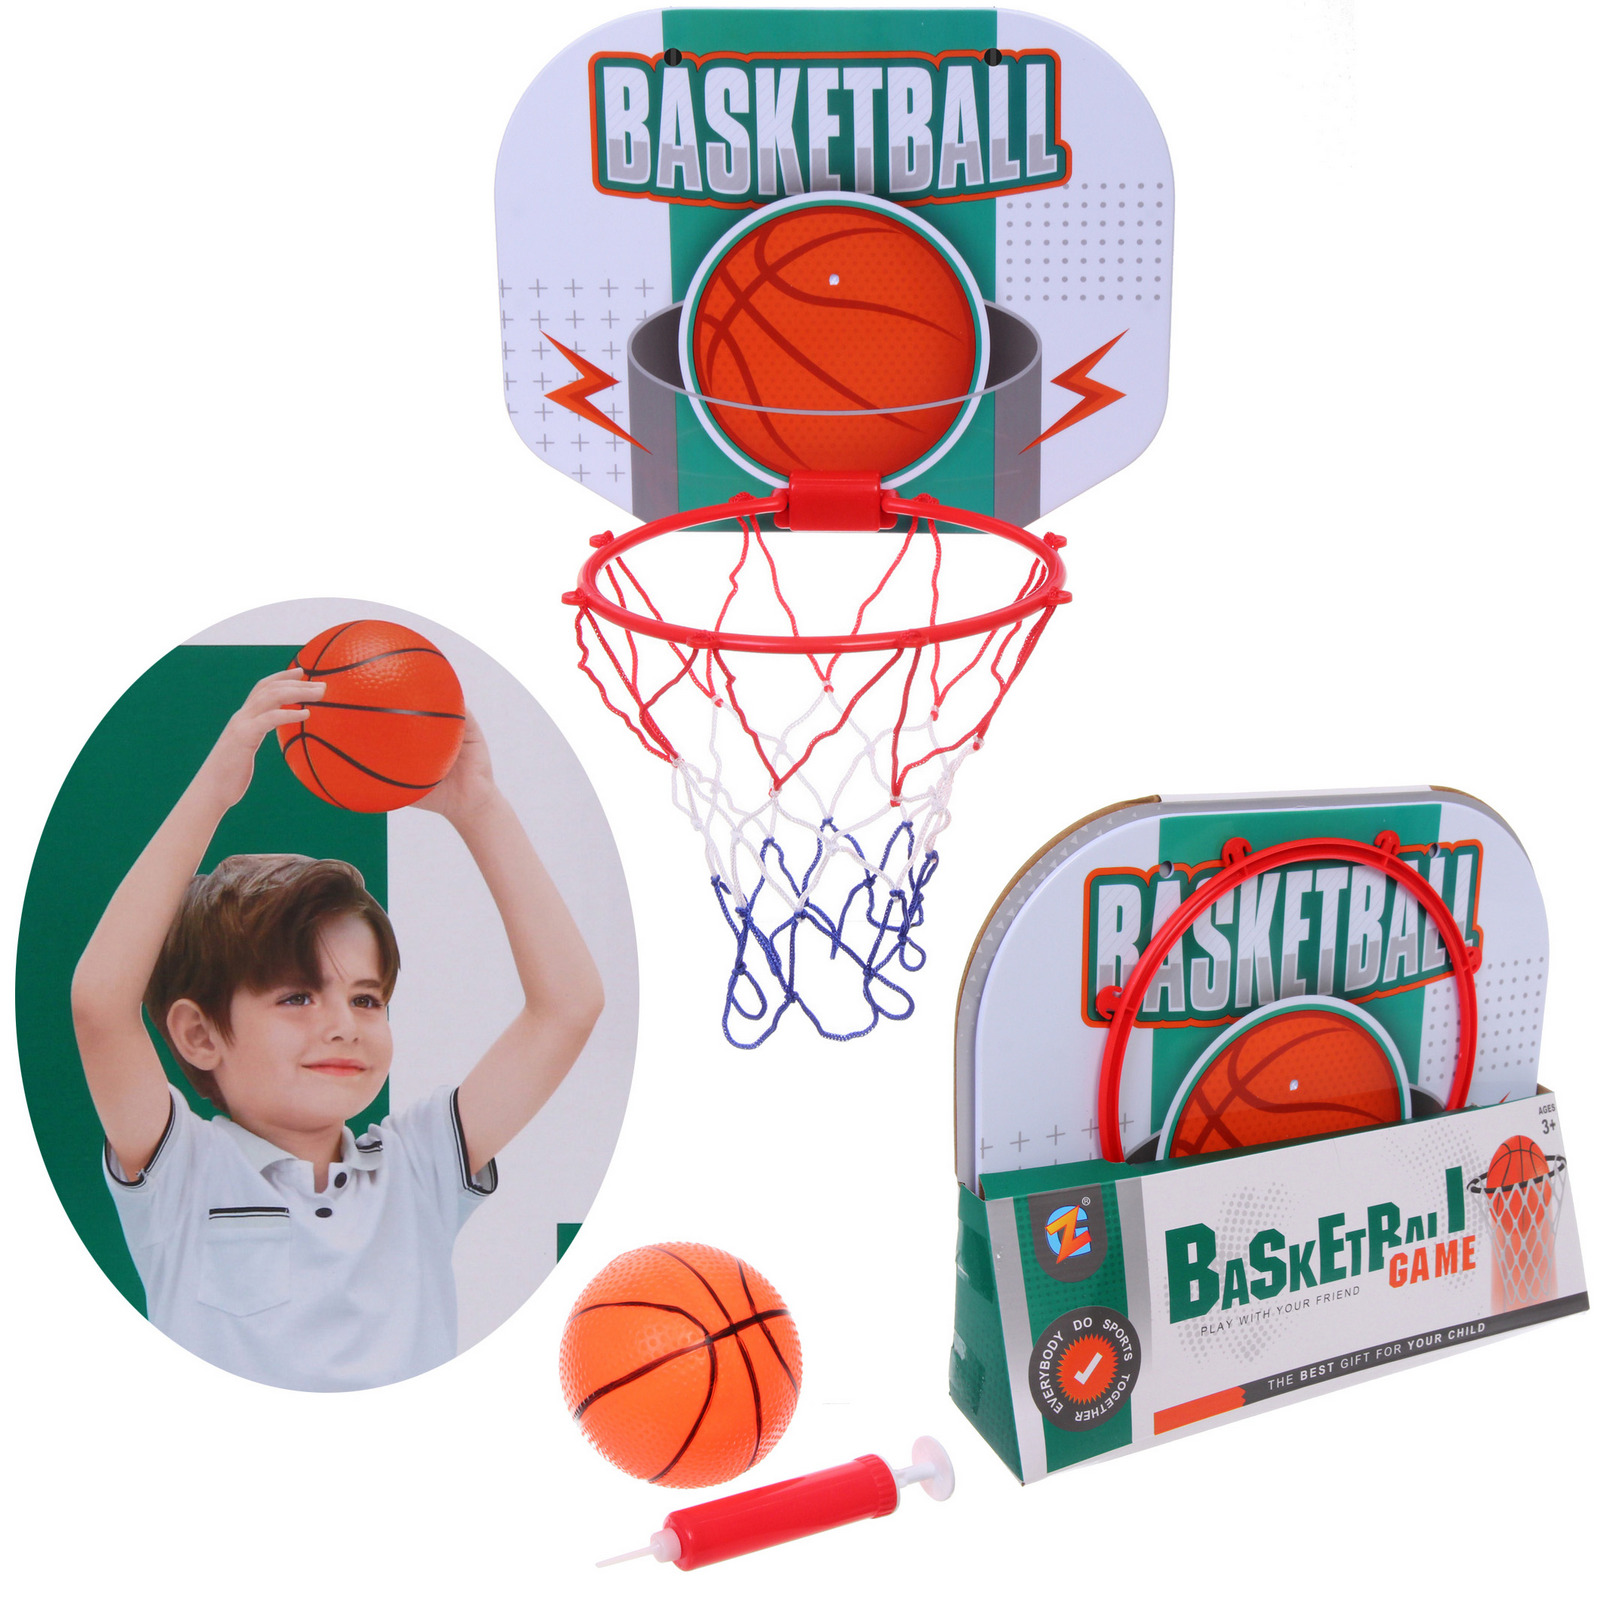 Набор для баскетбола Sportage Баскетбол 250-0343 кольцо 40х30 см, сетка, мяч 12 см, насос